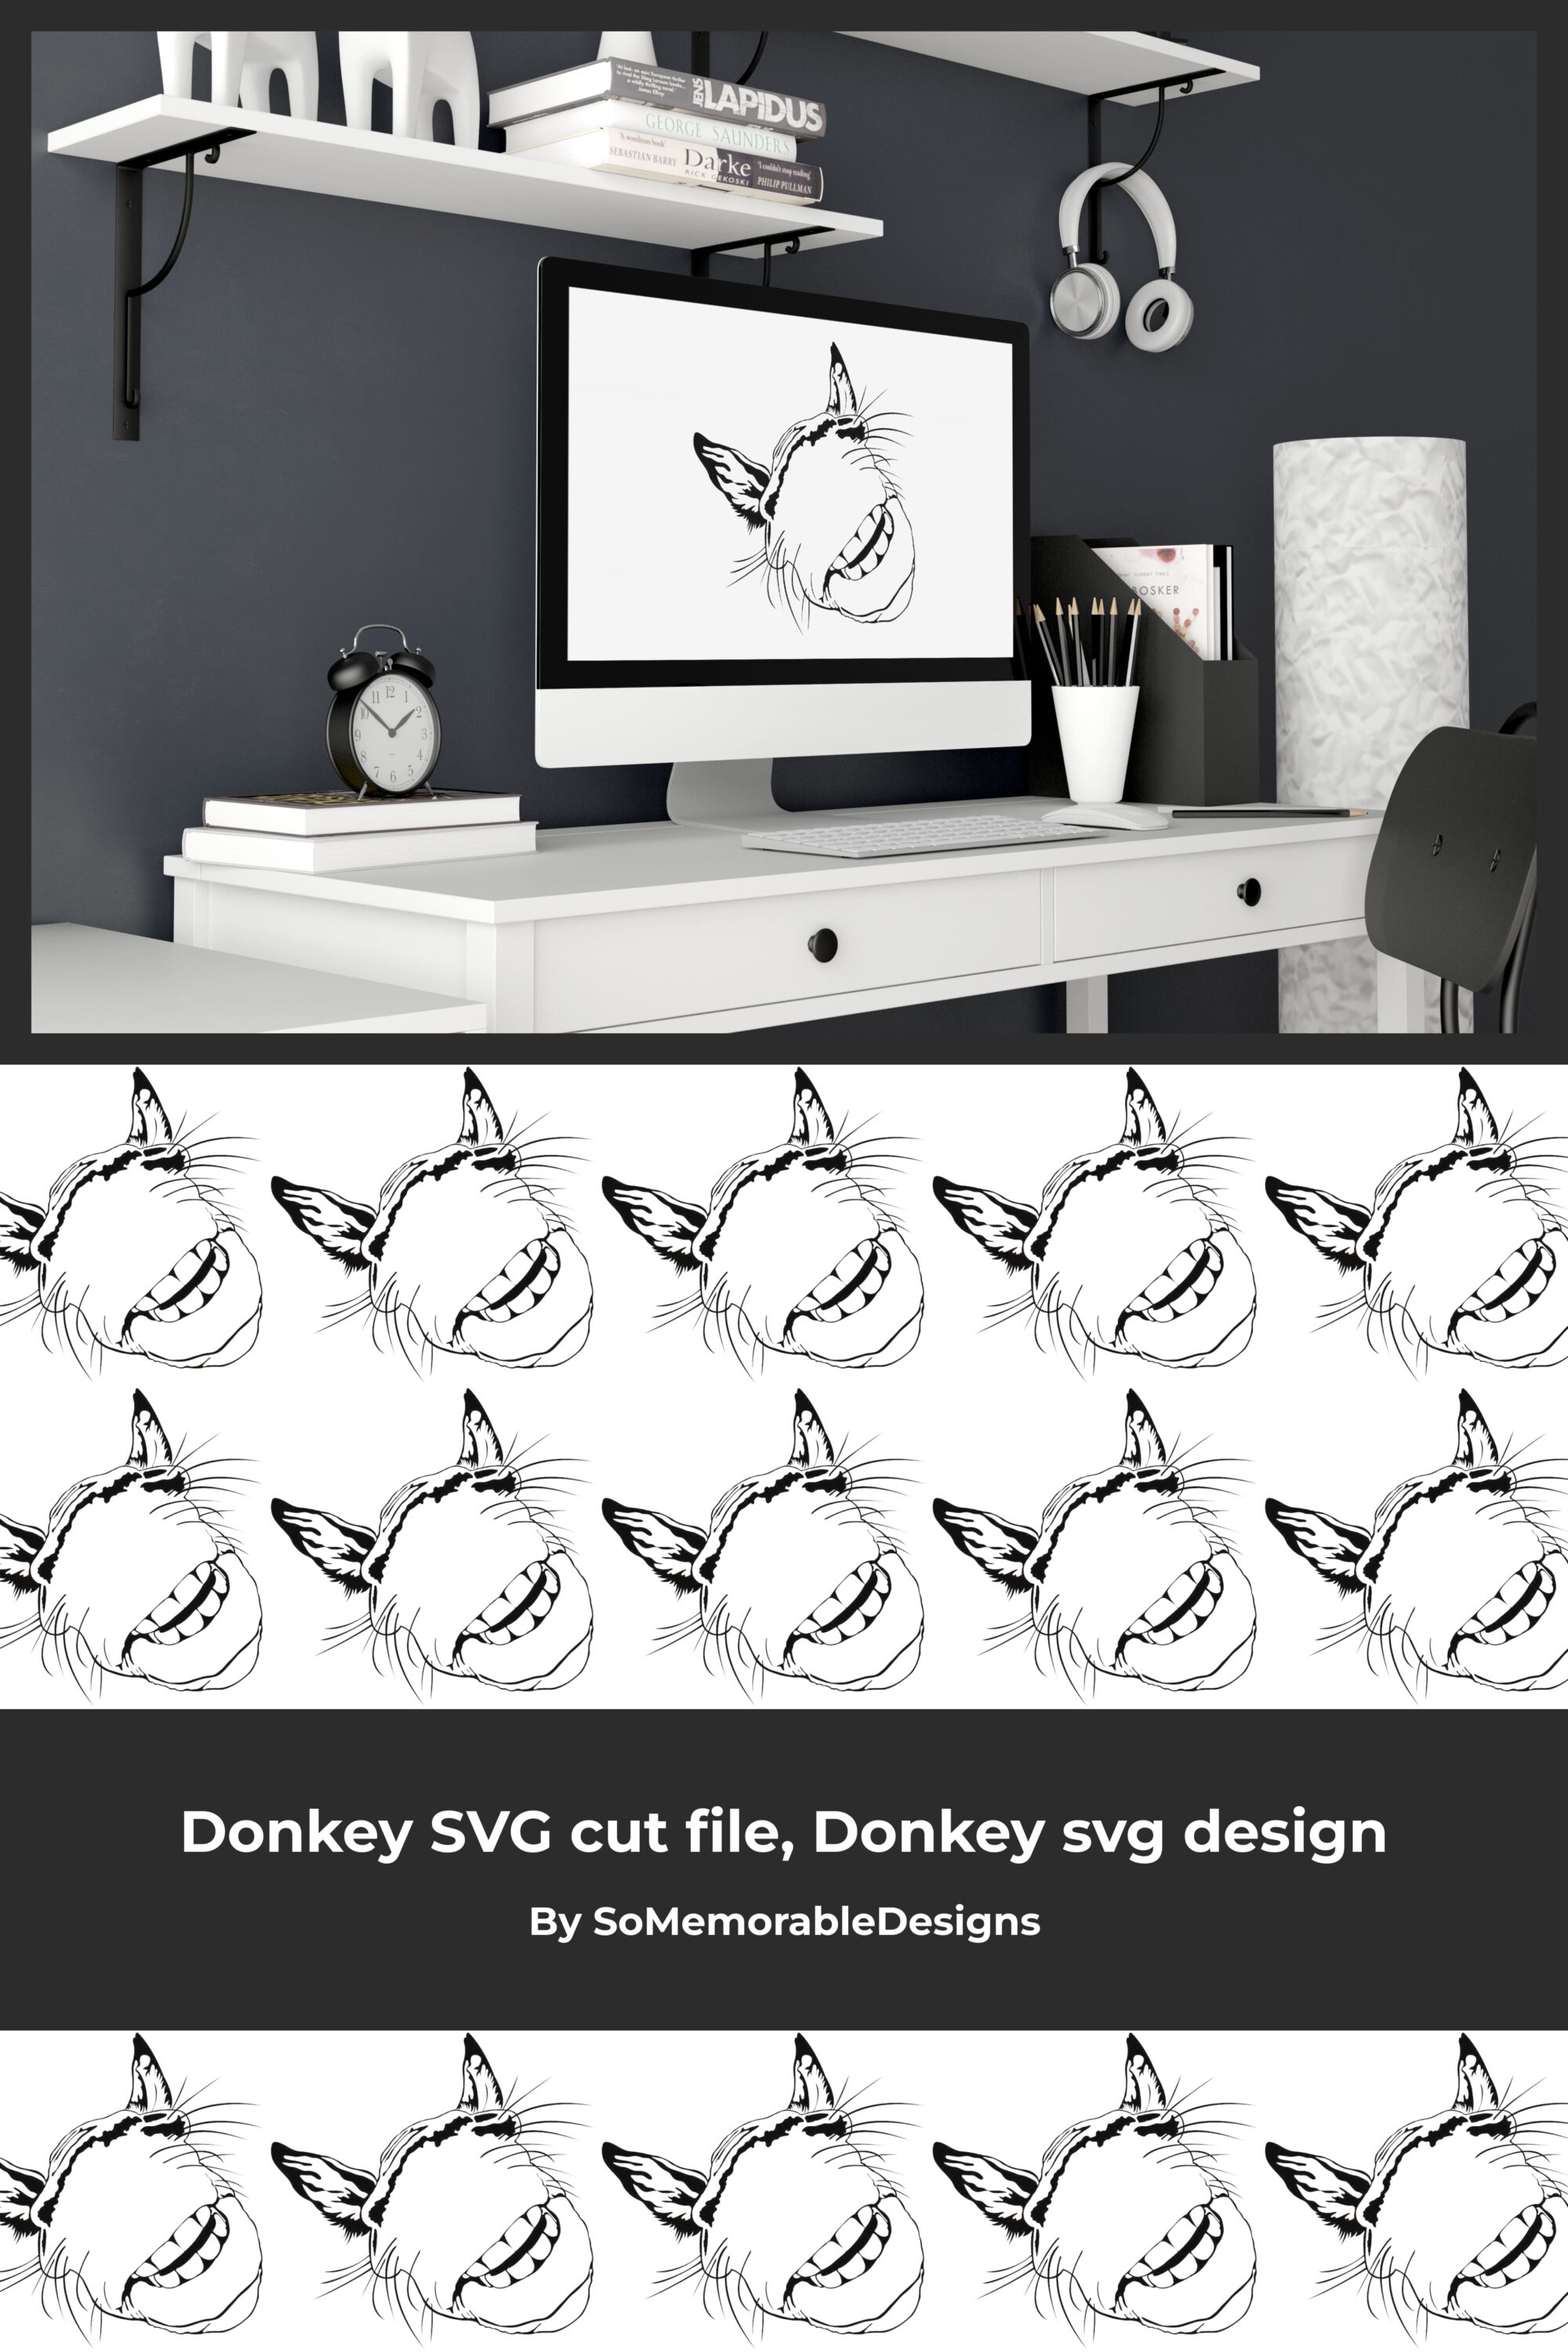 donkey svg cut file donkey svg design 03 200